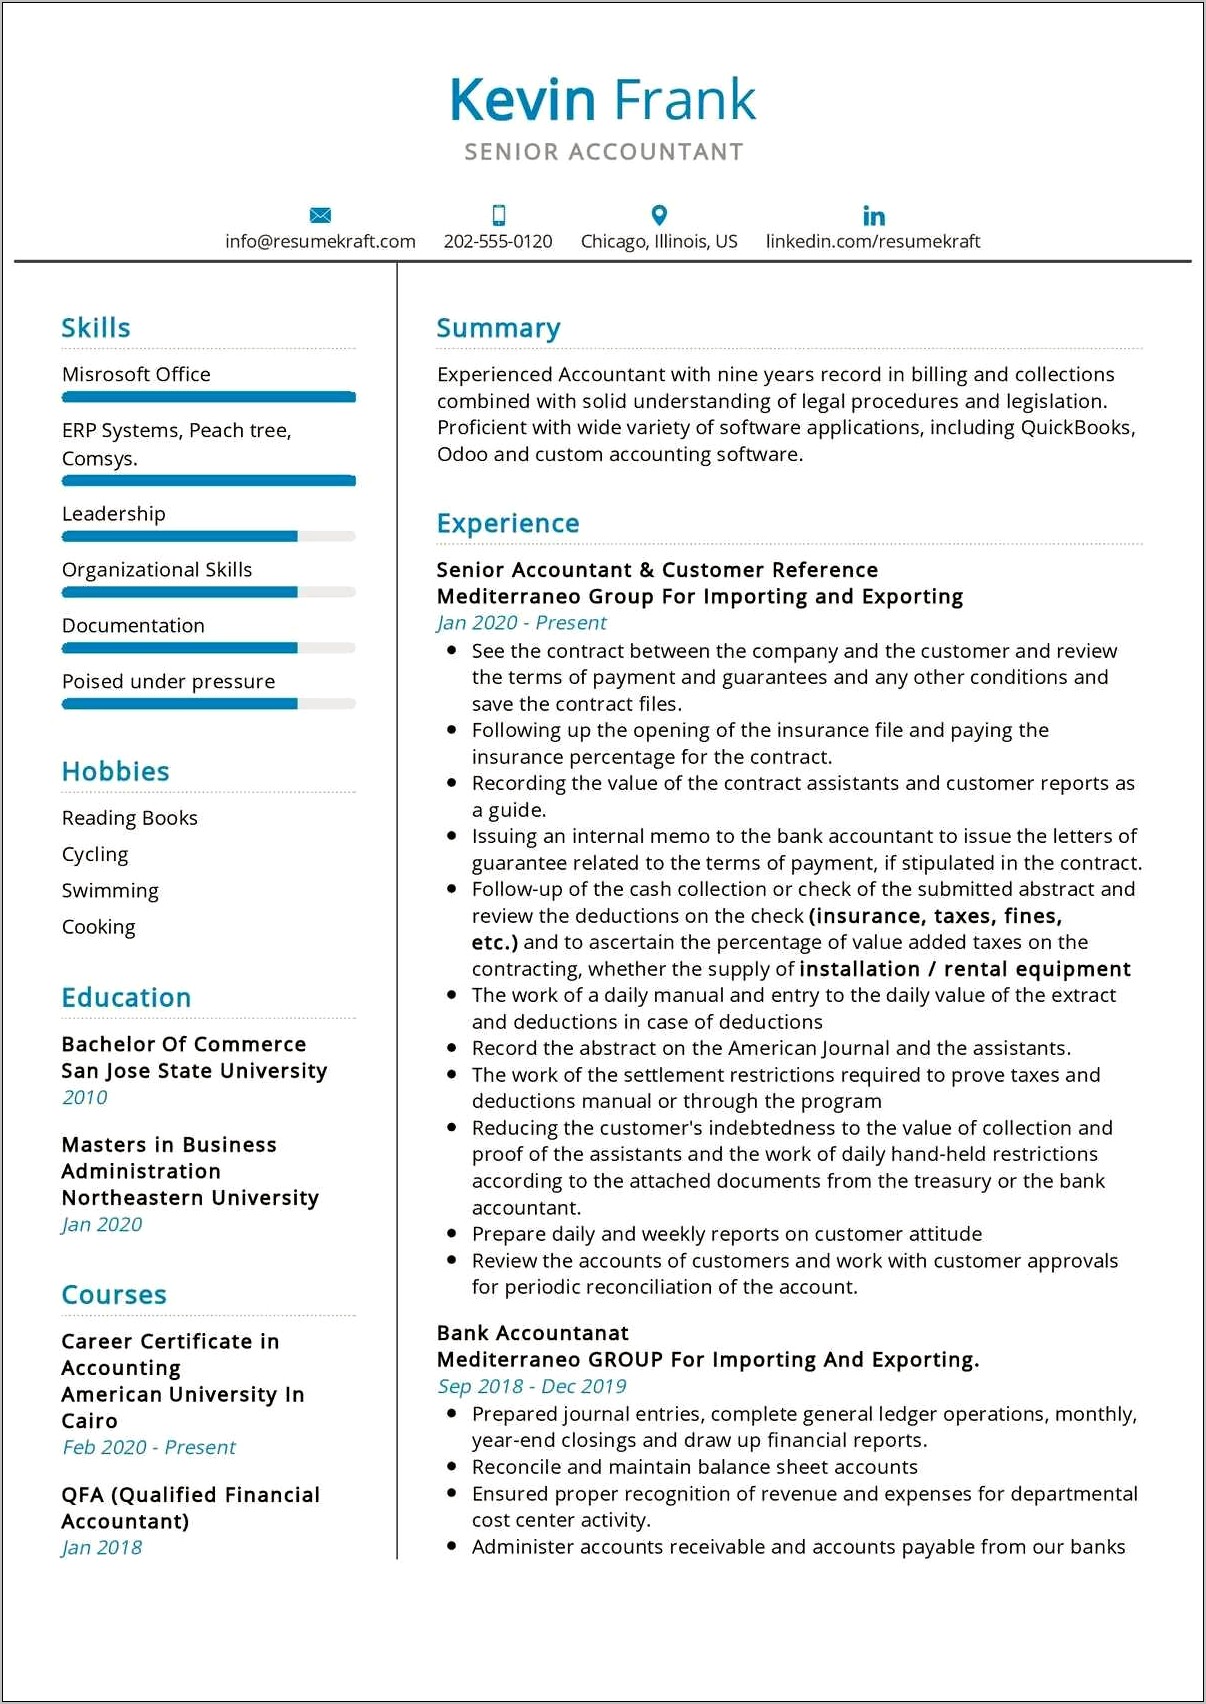 Resume Objective For Senior Auditor